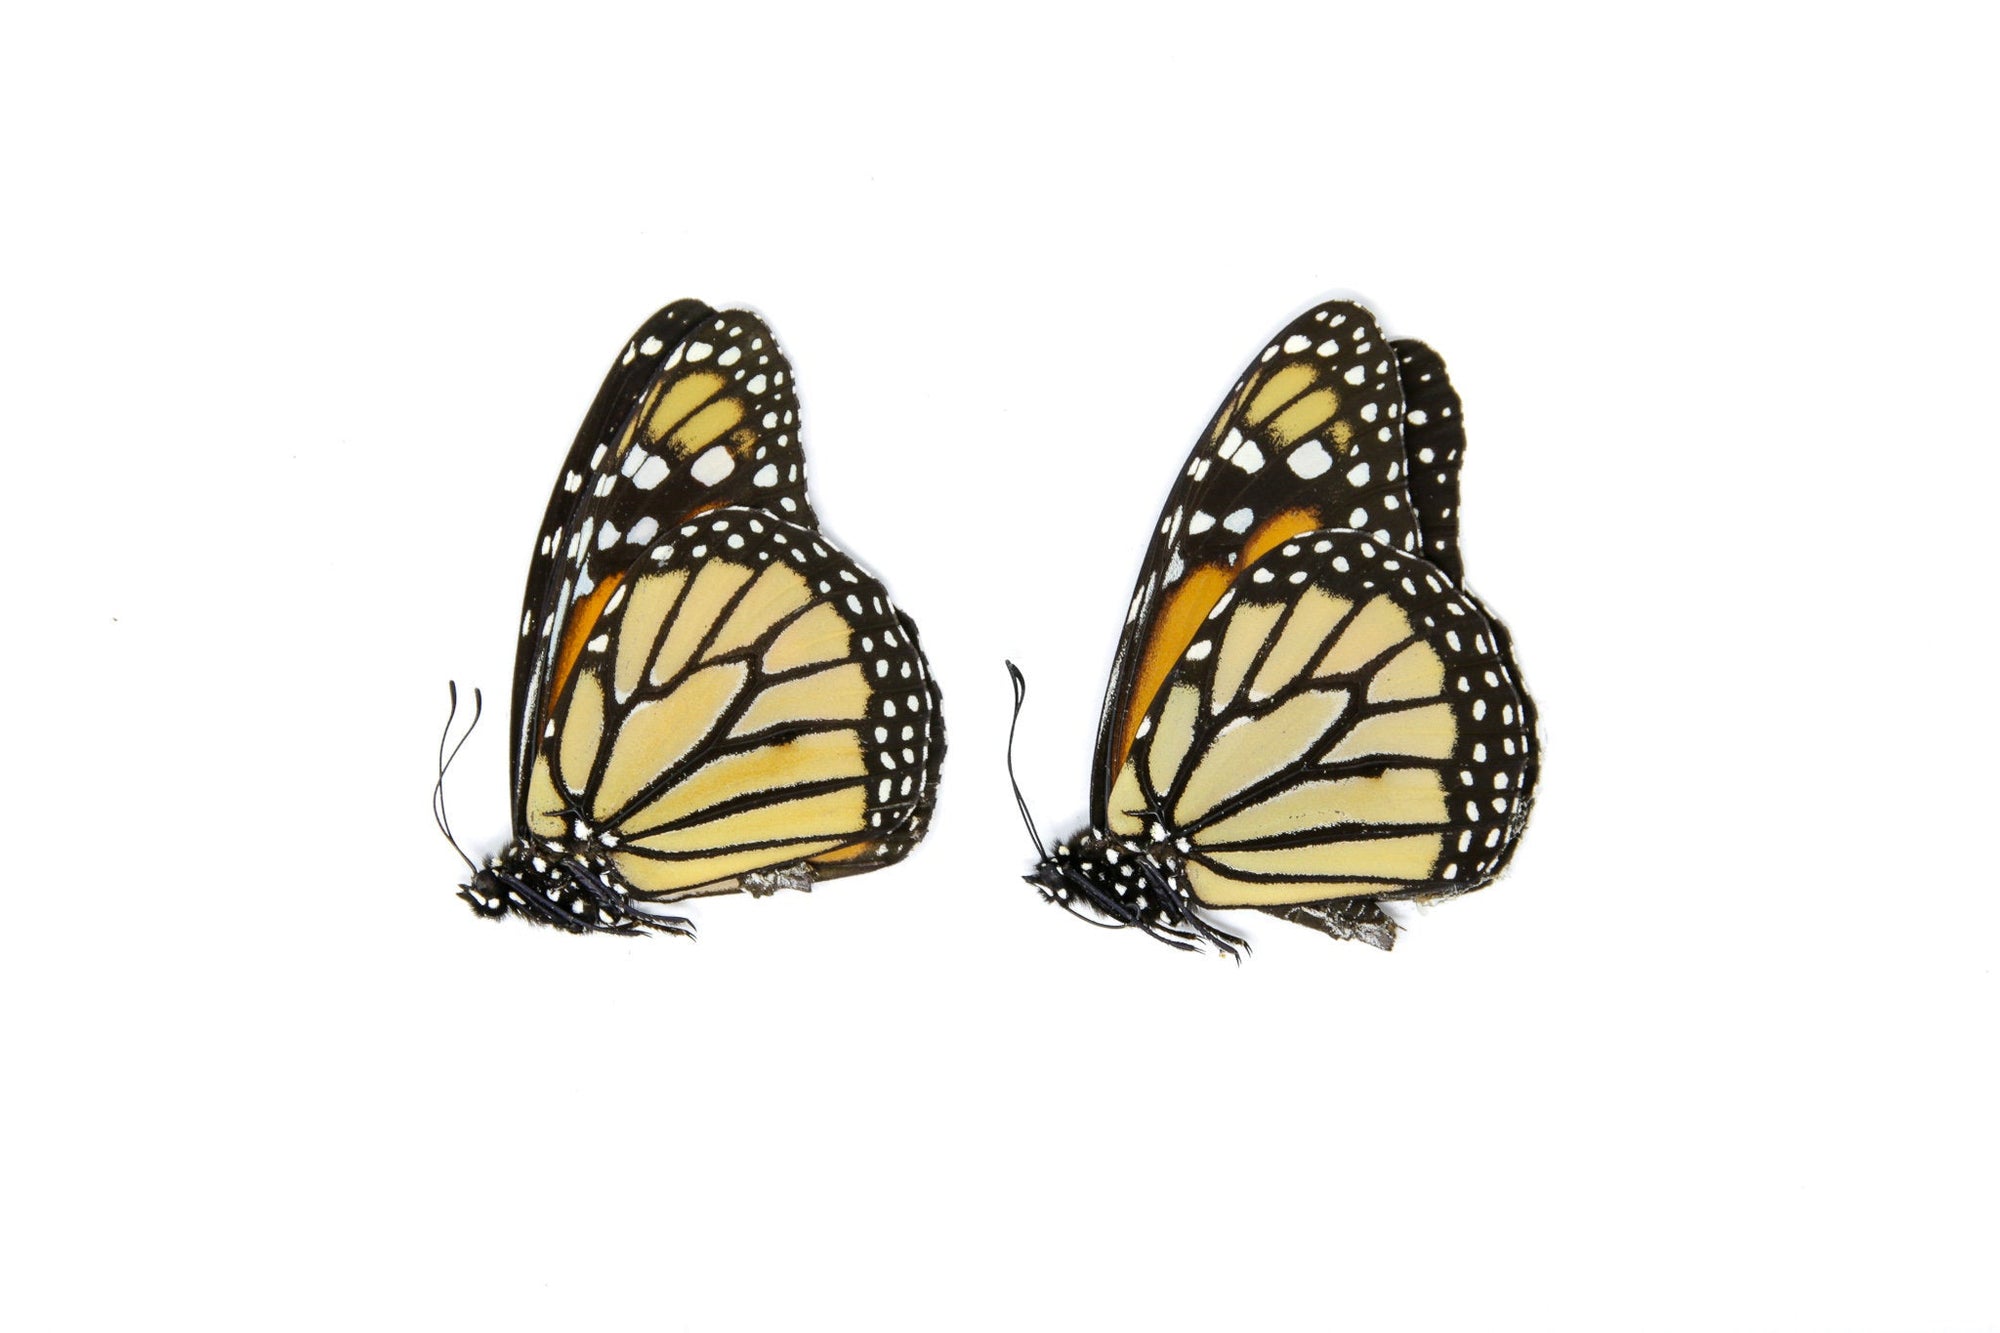 2 x Danaus plexippus | Monarch Butterflies | A1 Unmounted Specimens